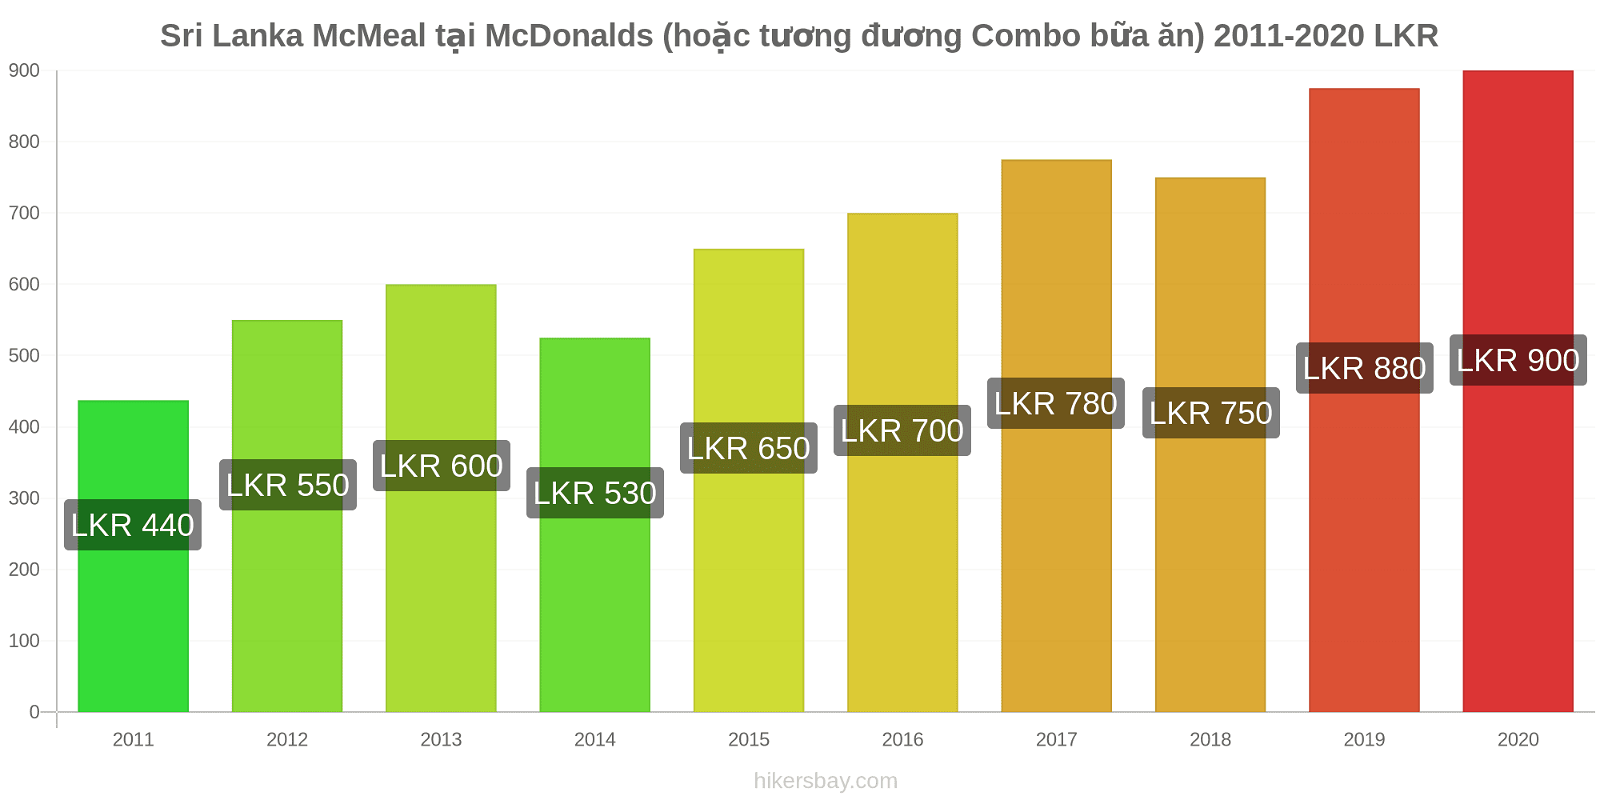 Sri Lanka thay đổi giá McMeal tại McDonalds (hoặc tương đương Combo bữa ăn) hikersbay.com